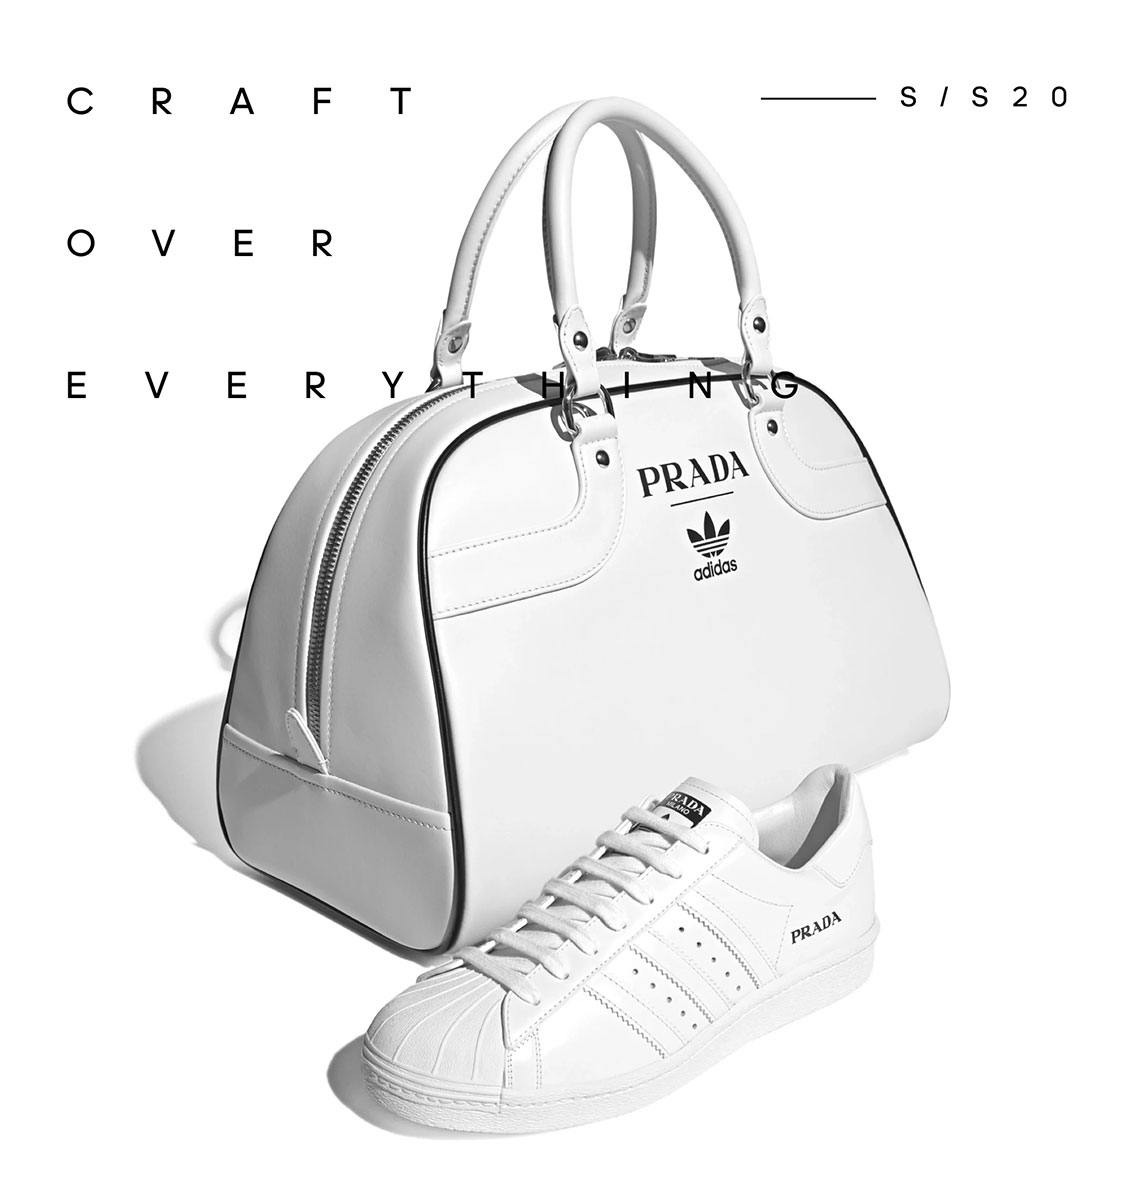 Prada adidas Shoe + Bag Price | SneakerNews.com